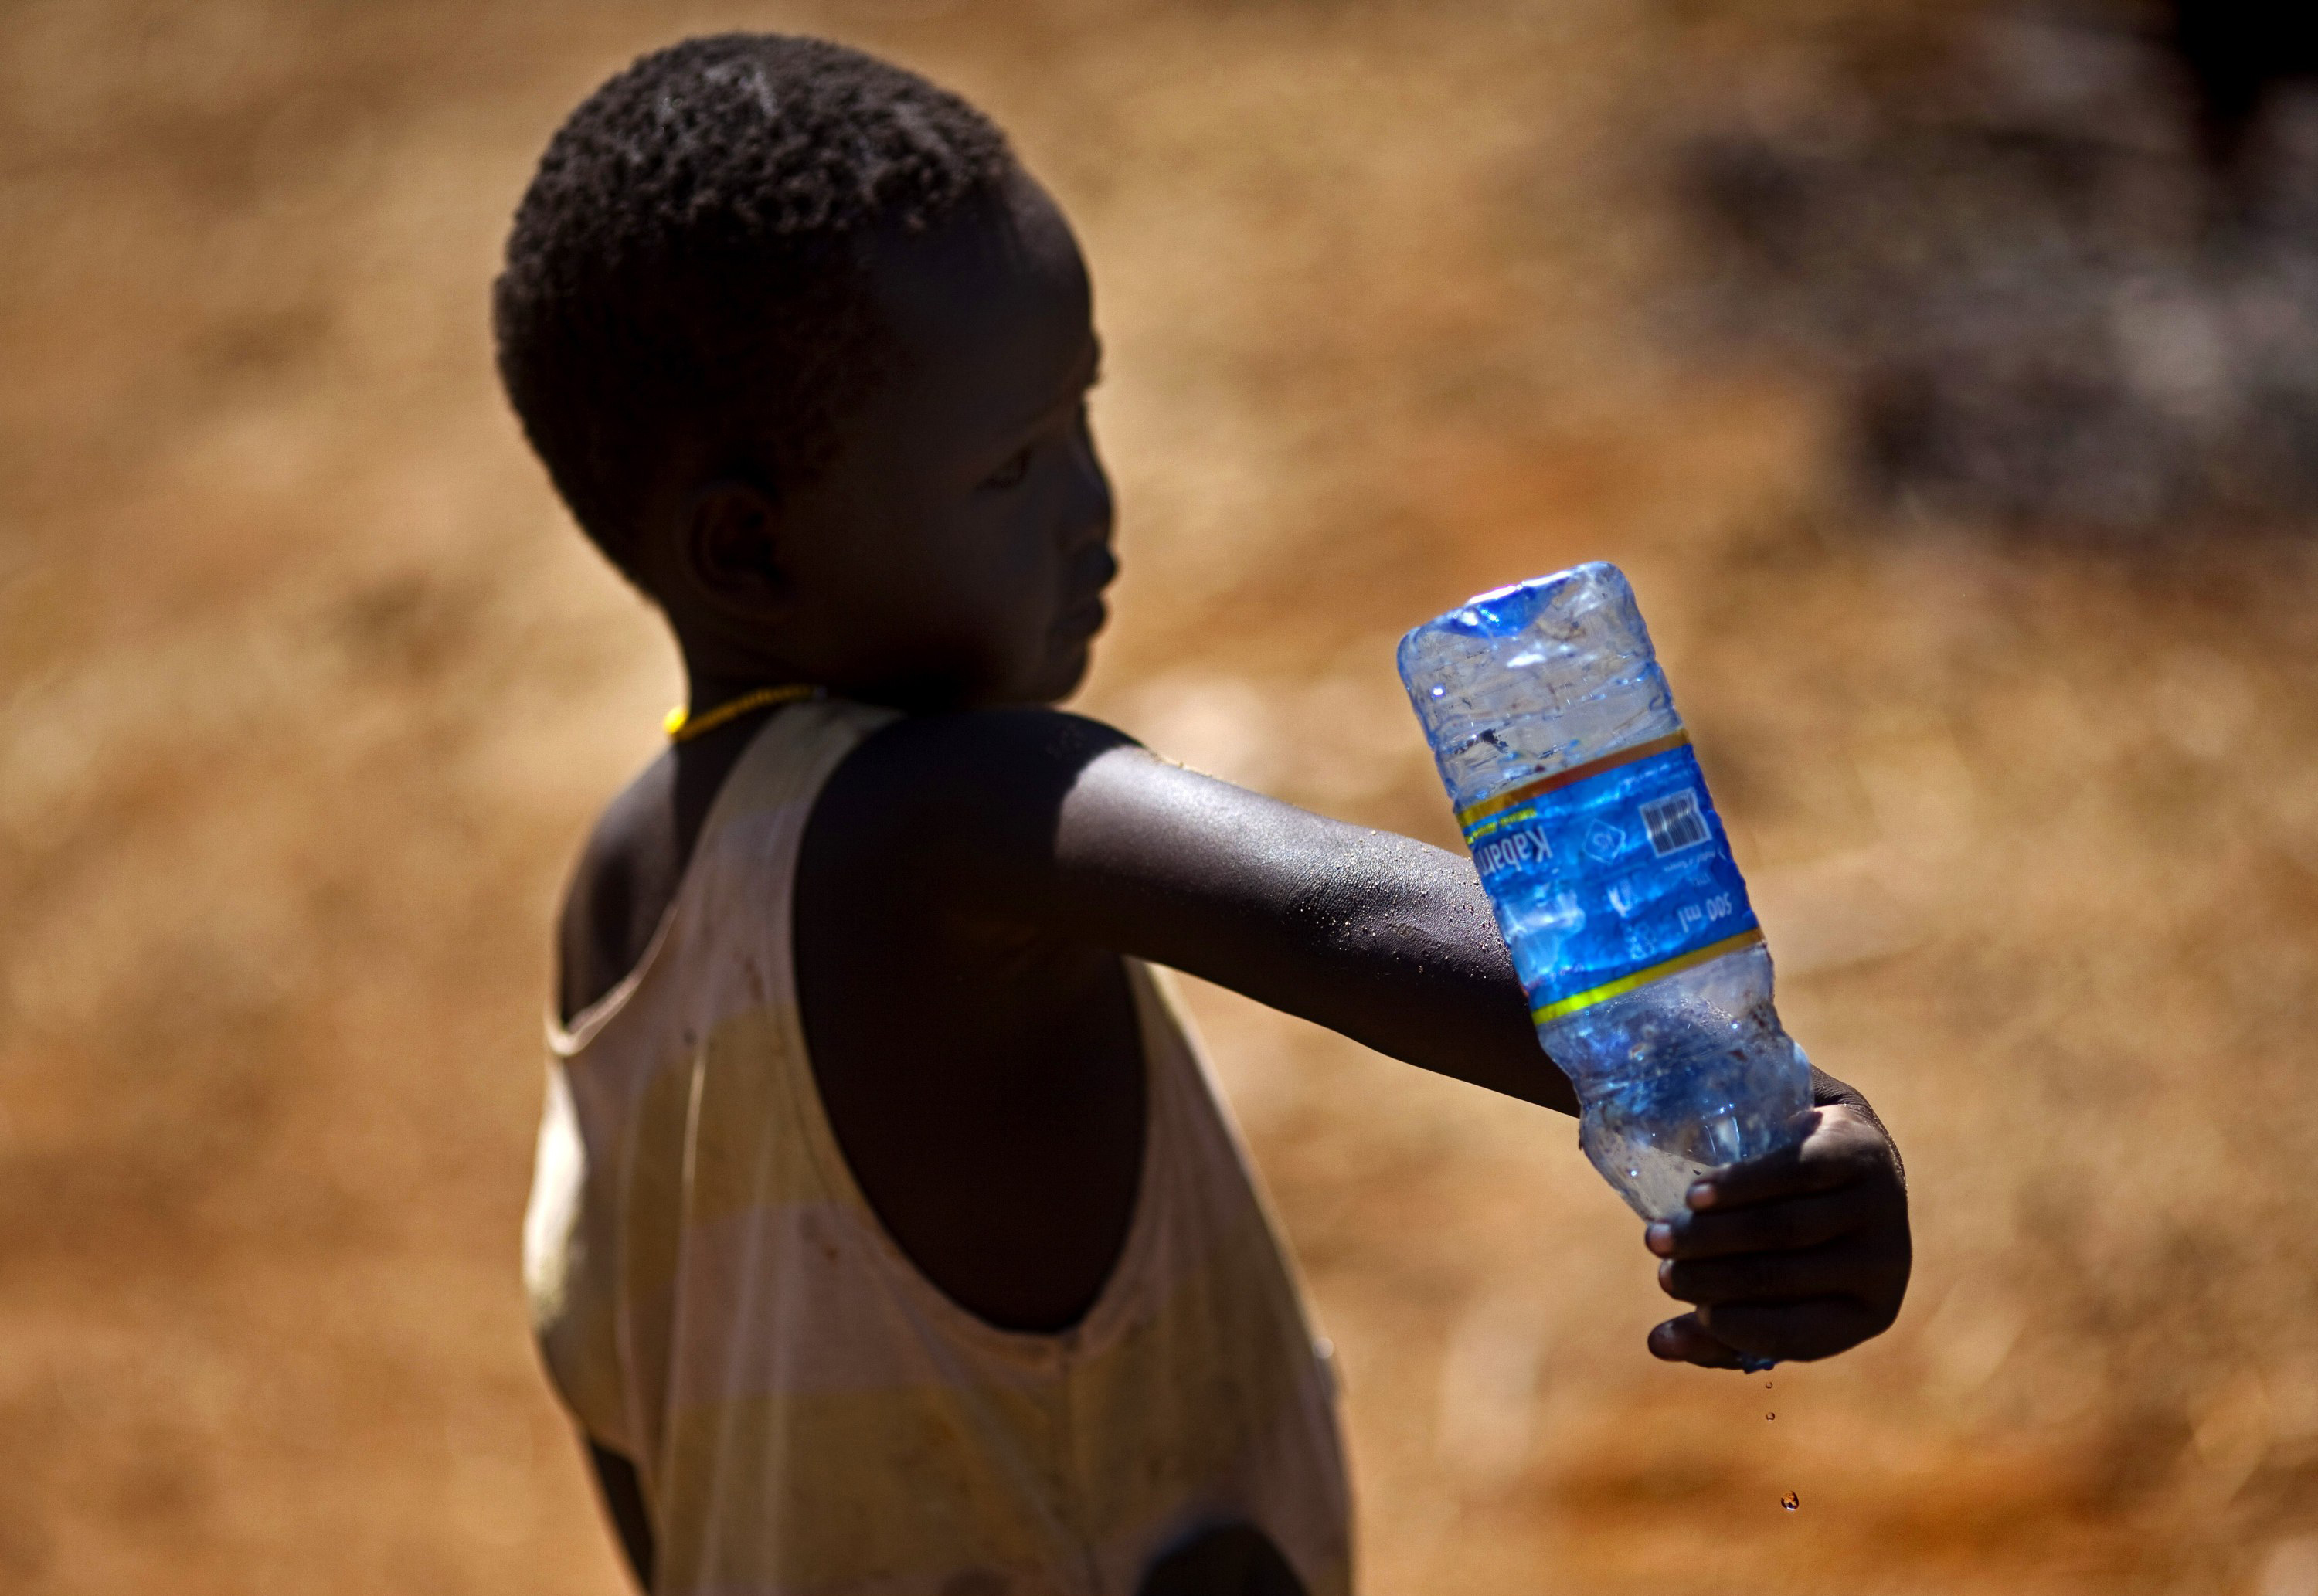 Teile von Afrika spüren den Klimawandel bereits heute: Weite Gebiete kämpfen mit längeren Trockenphasen und sauberes Trinkwasser wird zur Mangelware. 